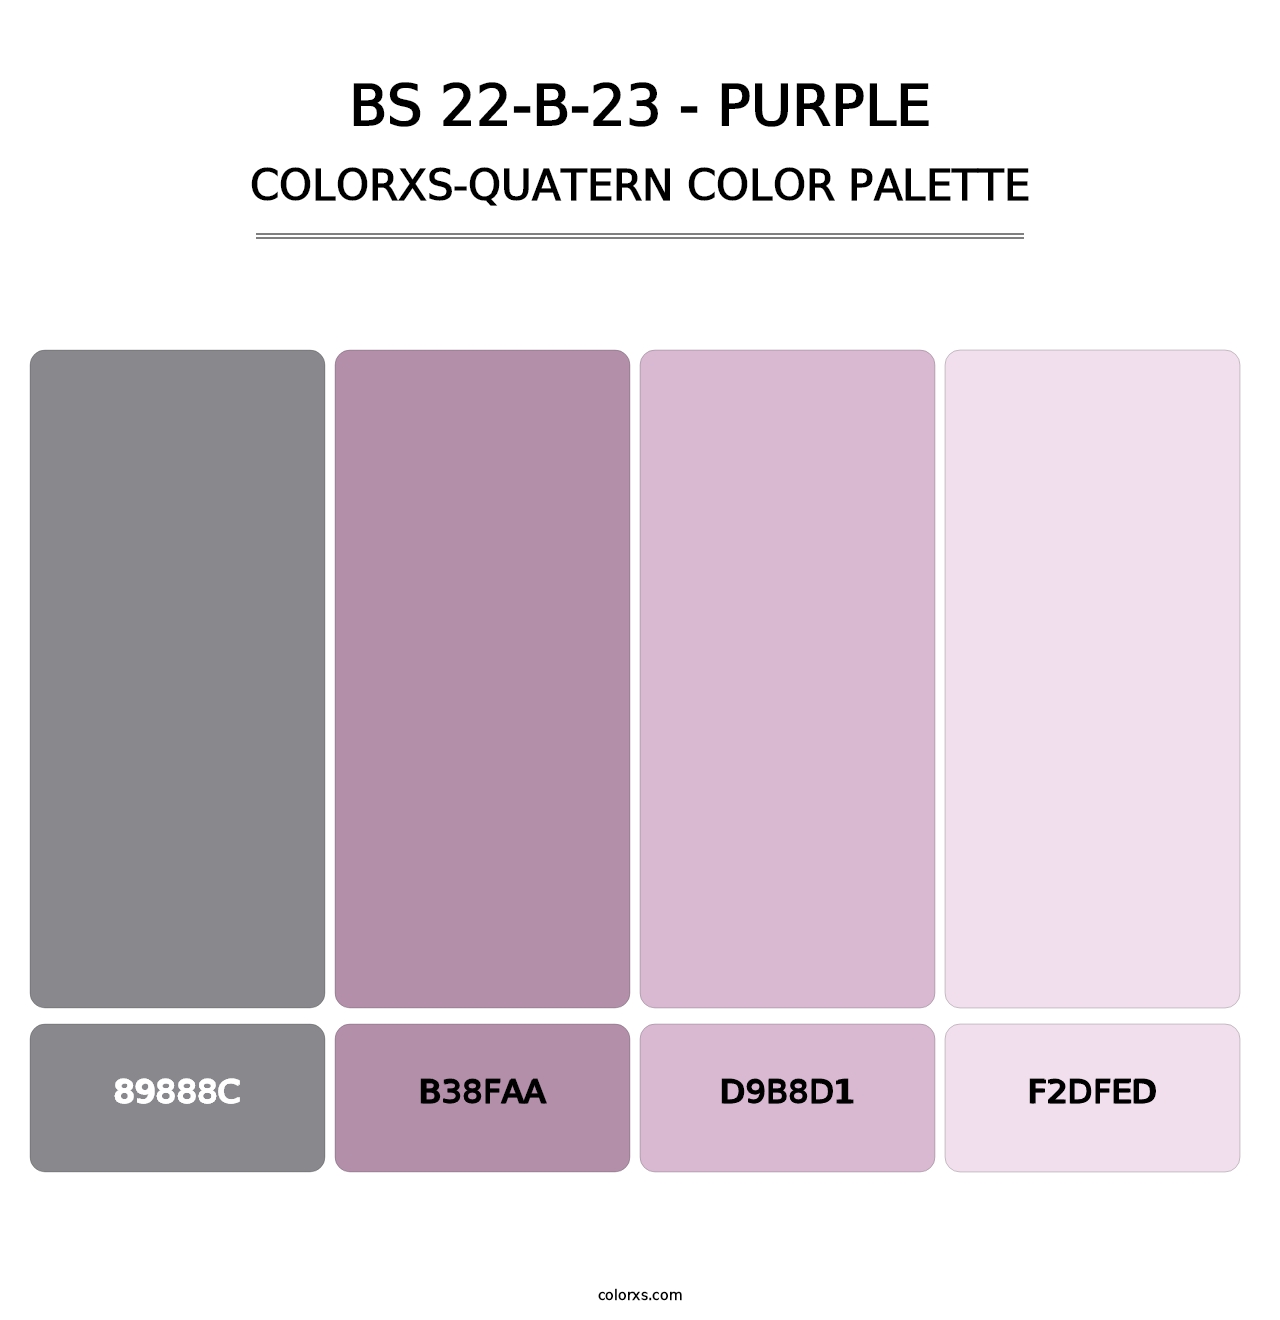 BS 22-B-23 - Purple - Colorxs Quatern Palette